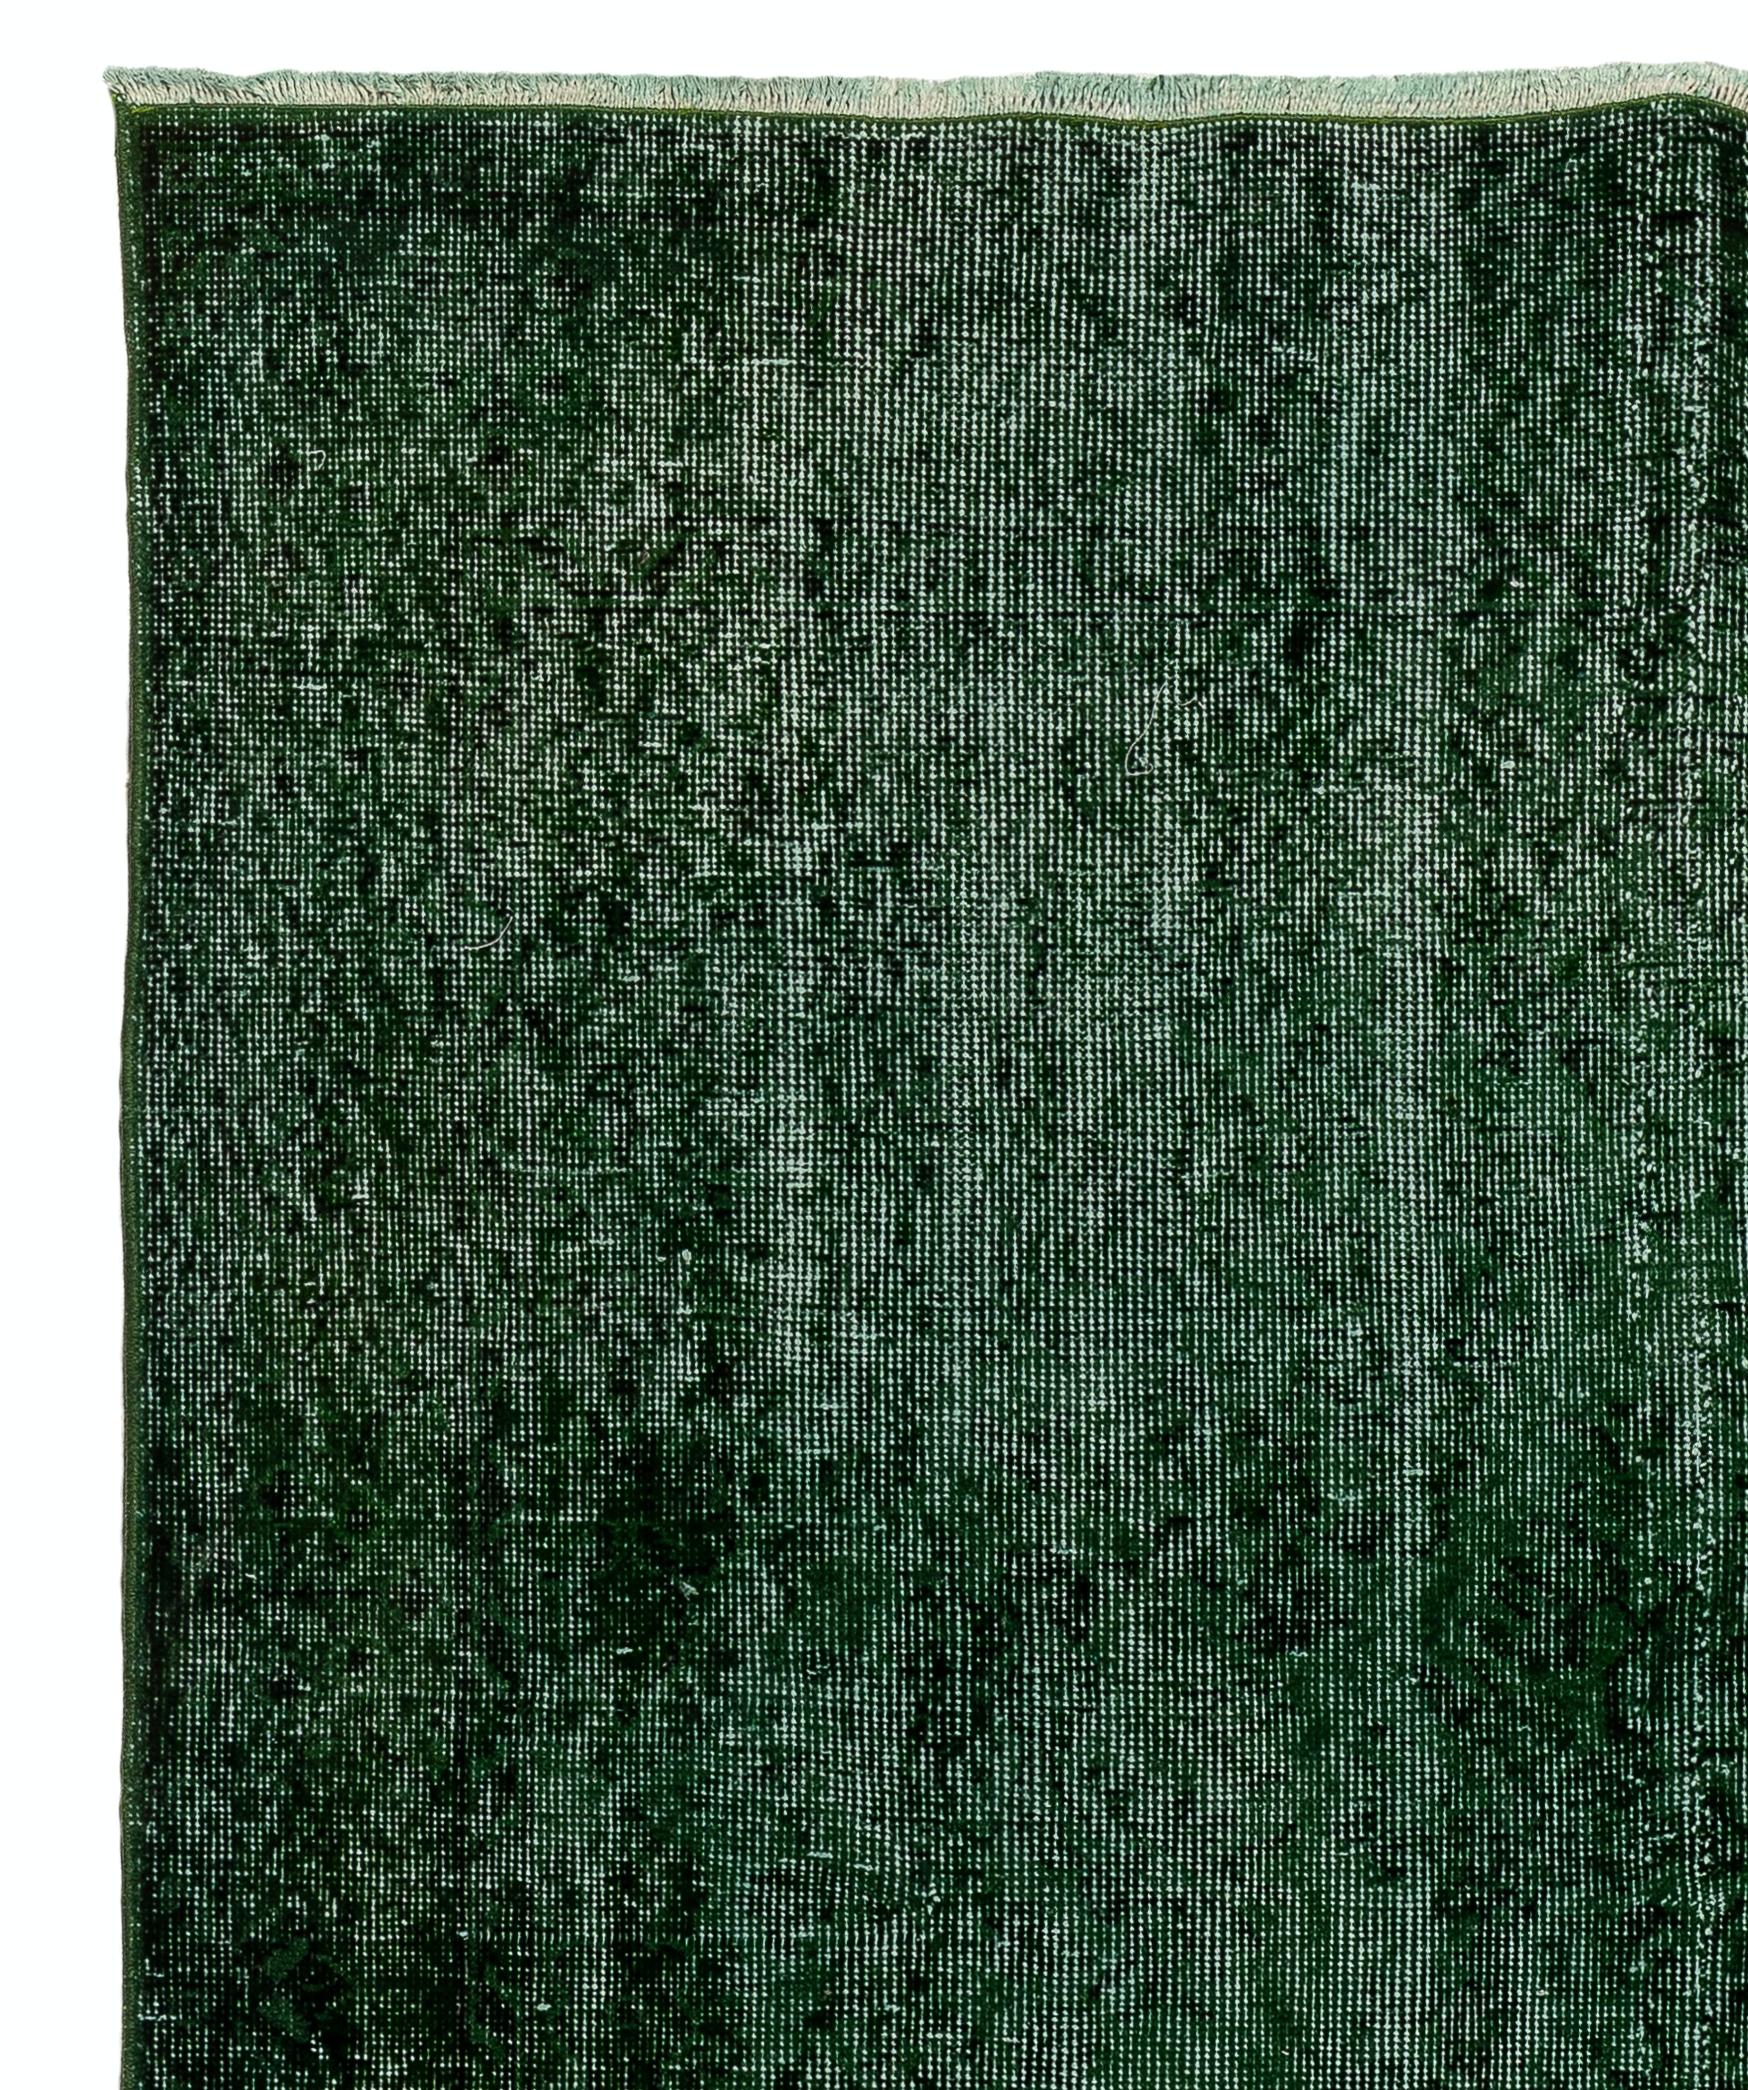 Ein alter türkischer Teppich, der in grüner Farbe neu gefärbt wurde, für moderne Innenräume. Maße: 6 x 10,2 ft.
Fein handgeknüpft, niedriger Wollflor auf Baumwollbasis. Professionell gewaschen.
Robust und für stark frequentierte Bereiche geeignet,